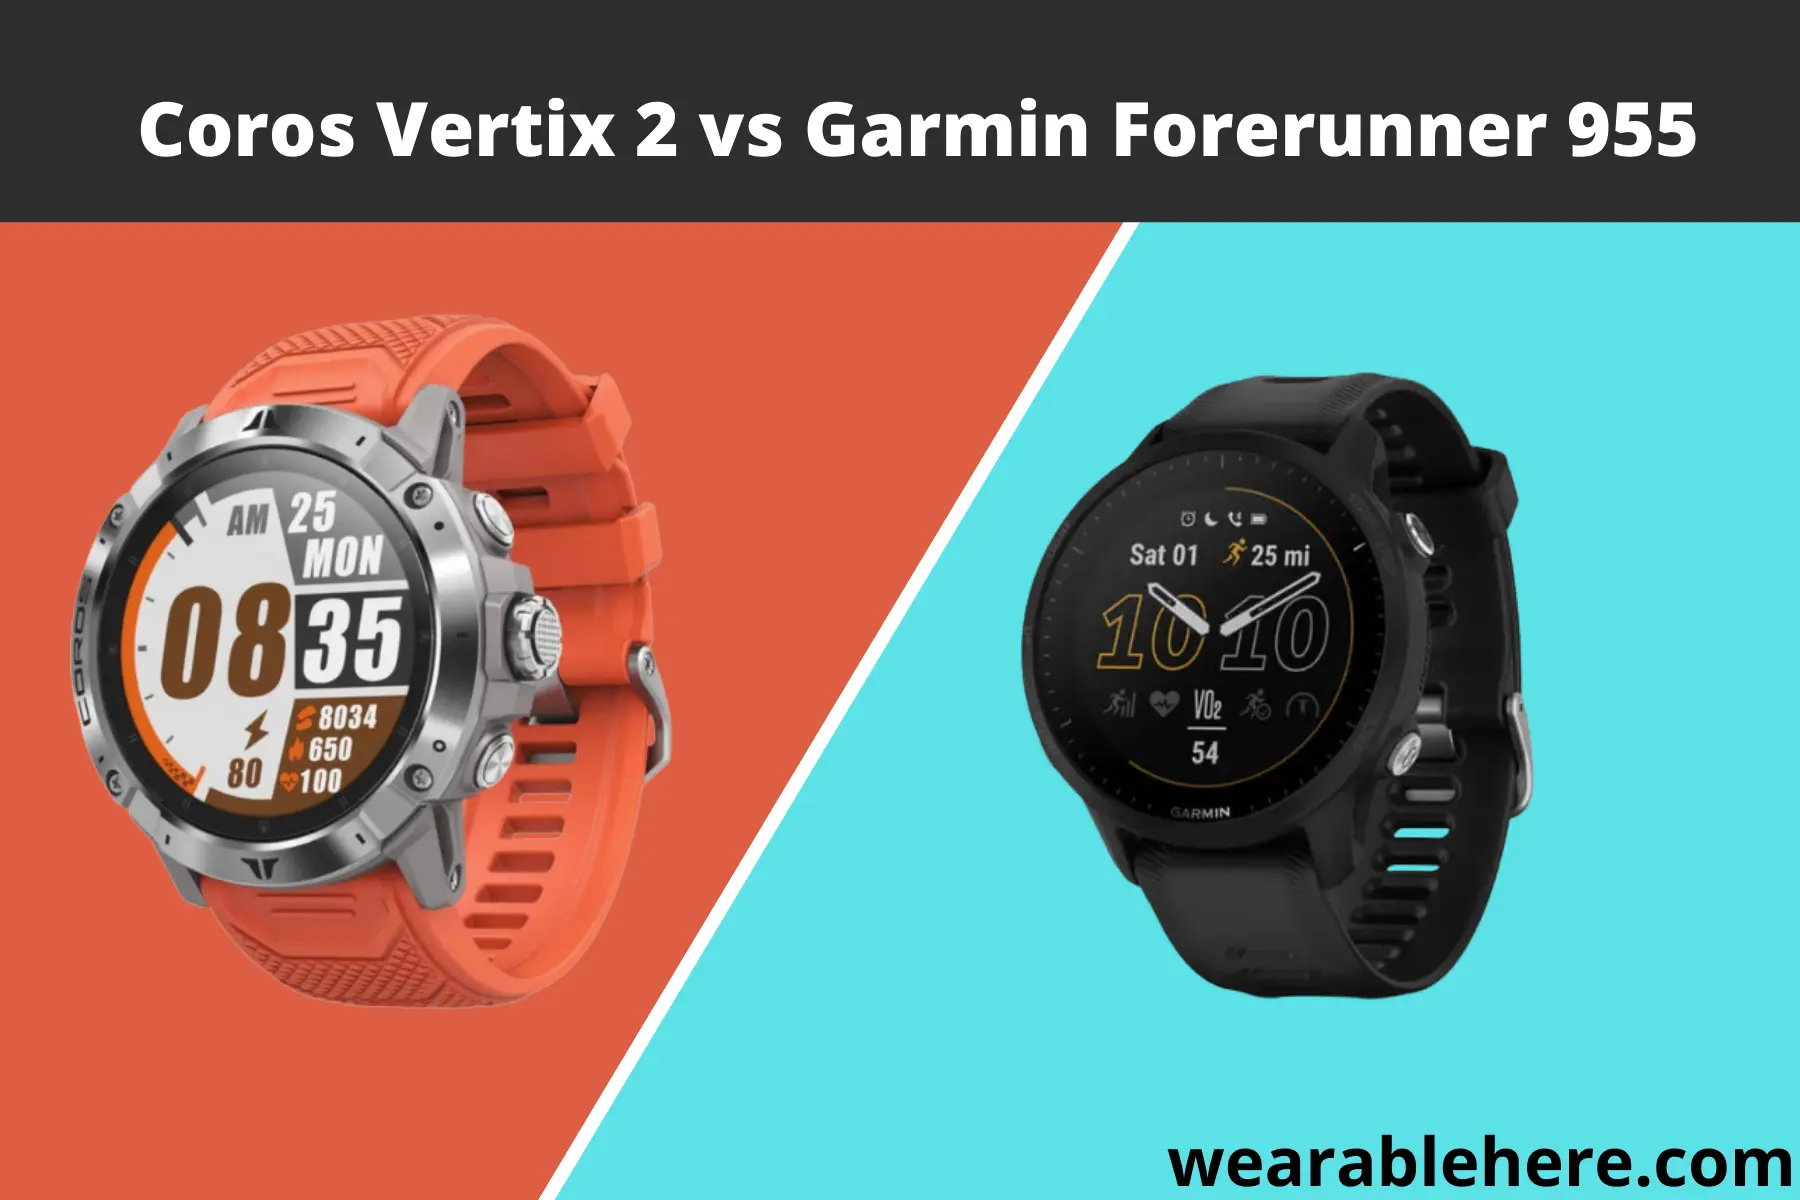 Coros-vertix-2-vs-Garmin-forerunner-955